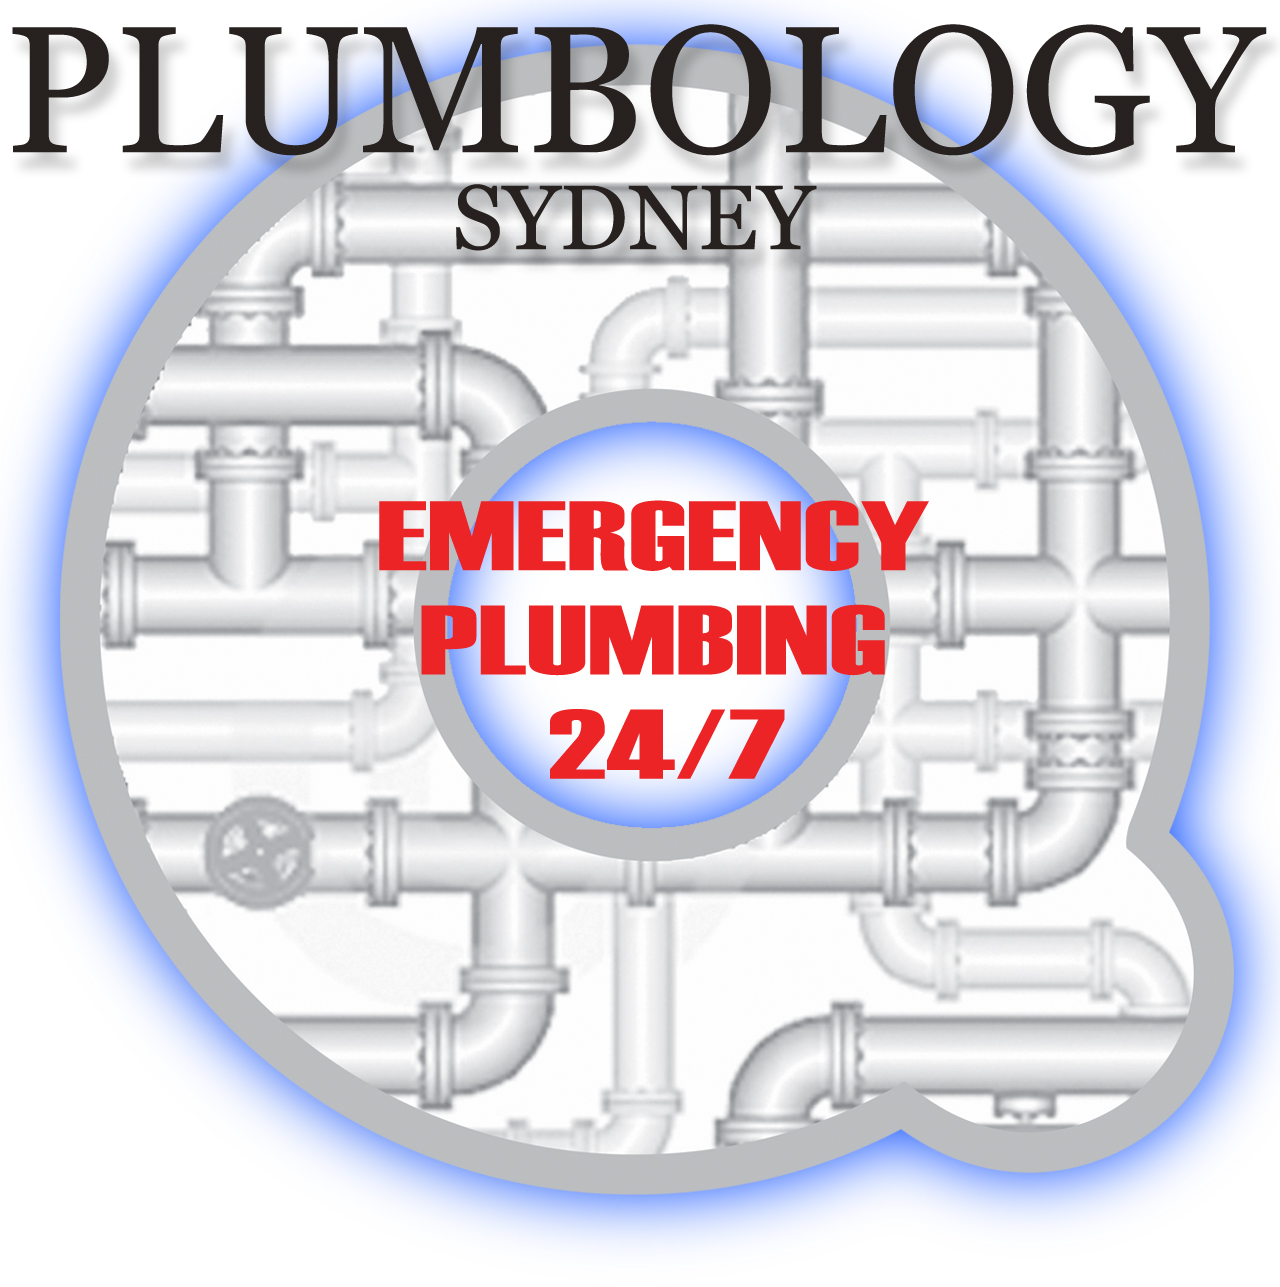 Plumbology Sydney Pty Ltd